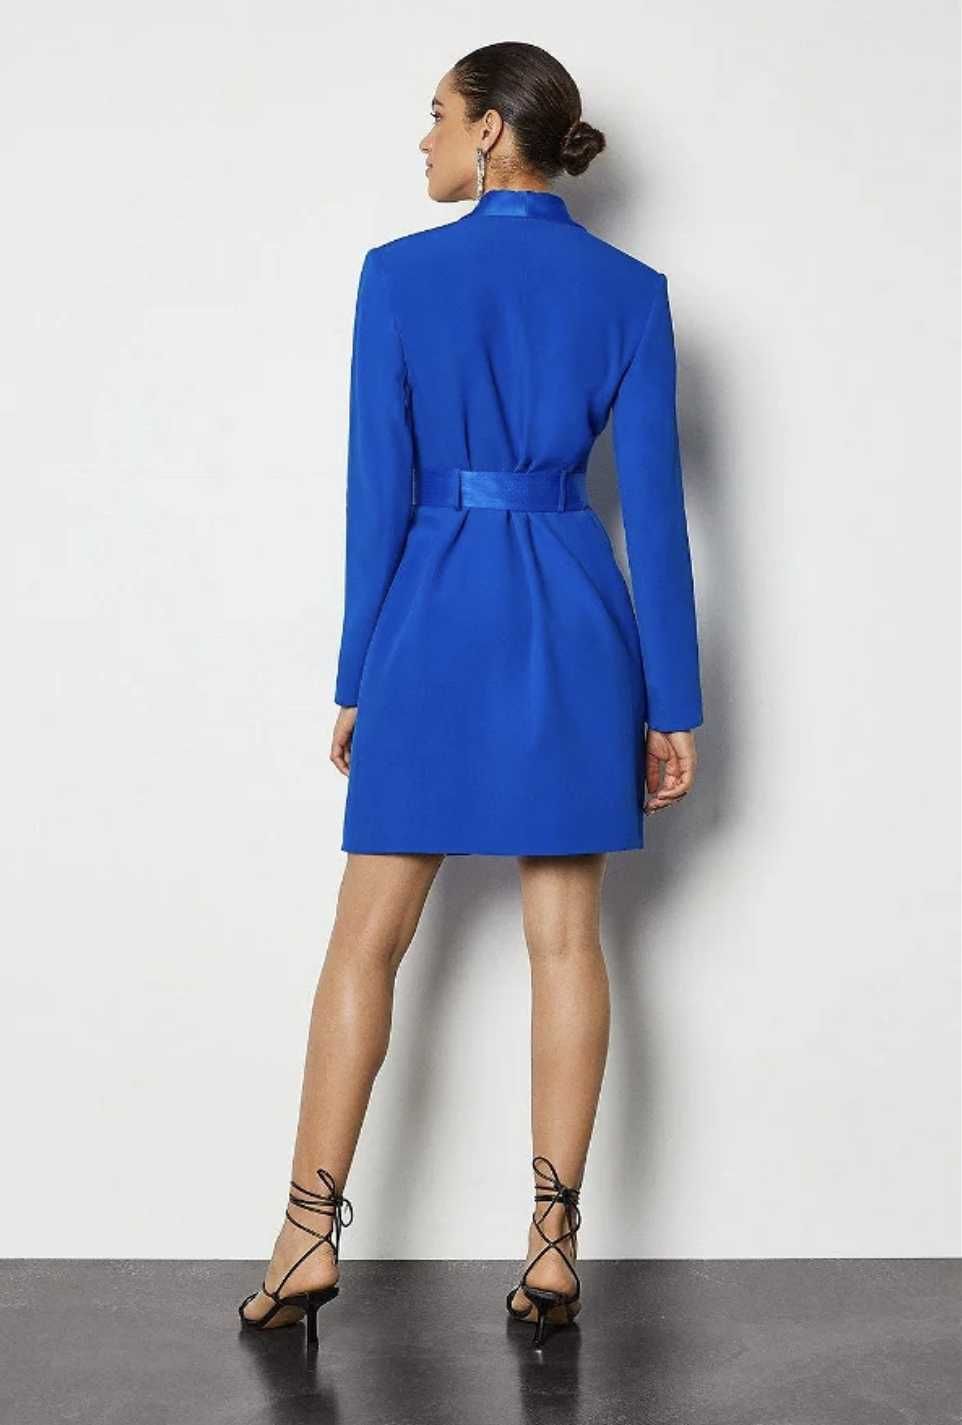 Karen Millen къса синя рокля тип блейзер/сако, размер M/38, НОВА